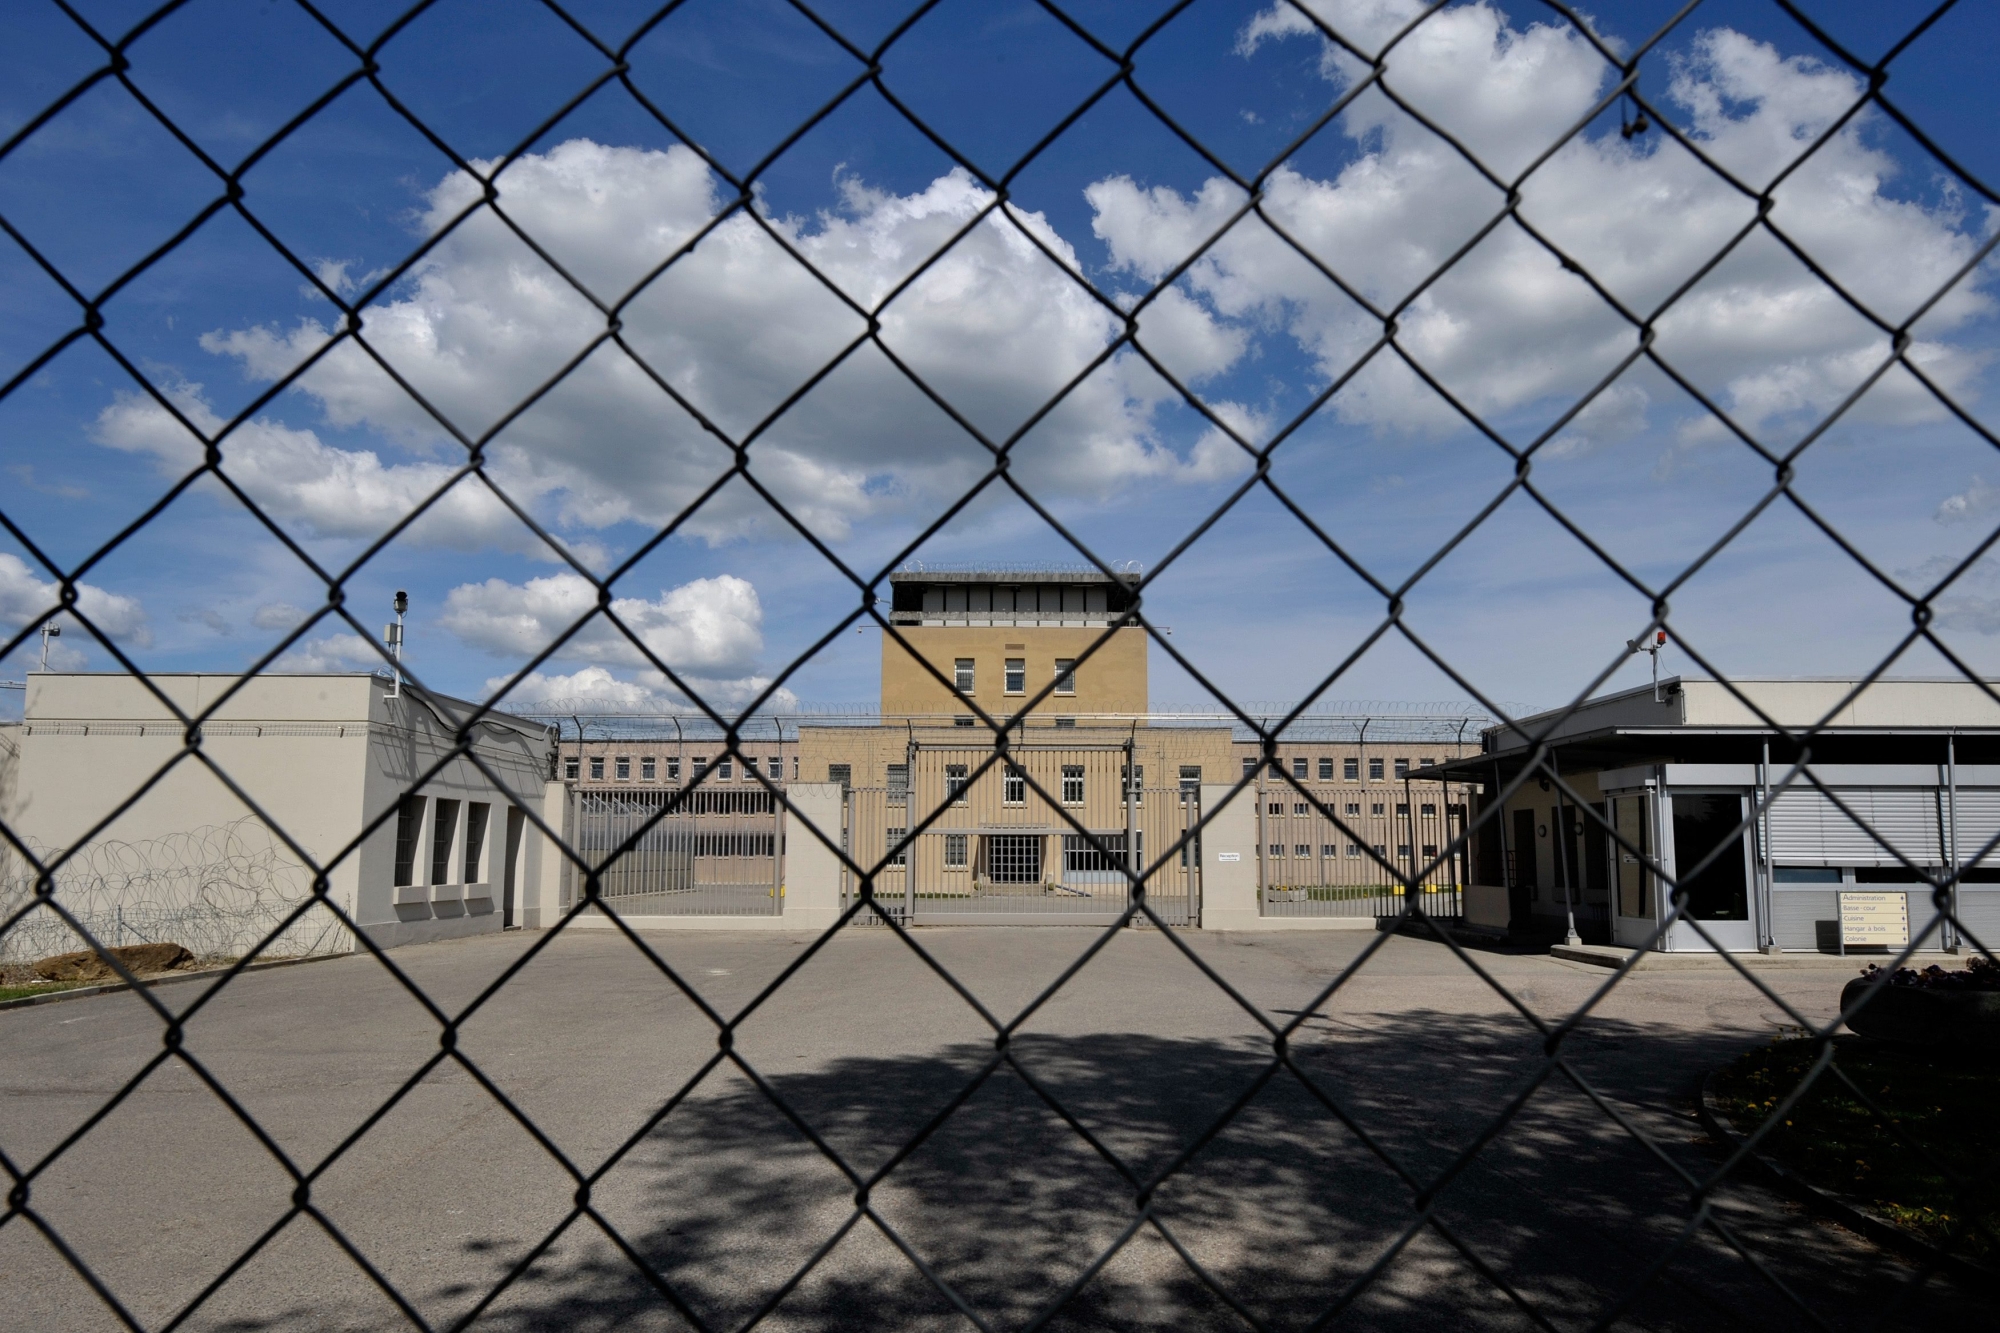 Les Etablissements penitenciaire de la plaine de l'Orbe, EPO, appele aussi prison de Bochuz, photographie ce lundi 26 avril 2010 a Orbe.  (KEYSTONE/Dominic Favre) SCHWEIZ GEFAENGNIS BOCHUZ